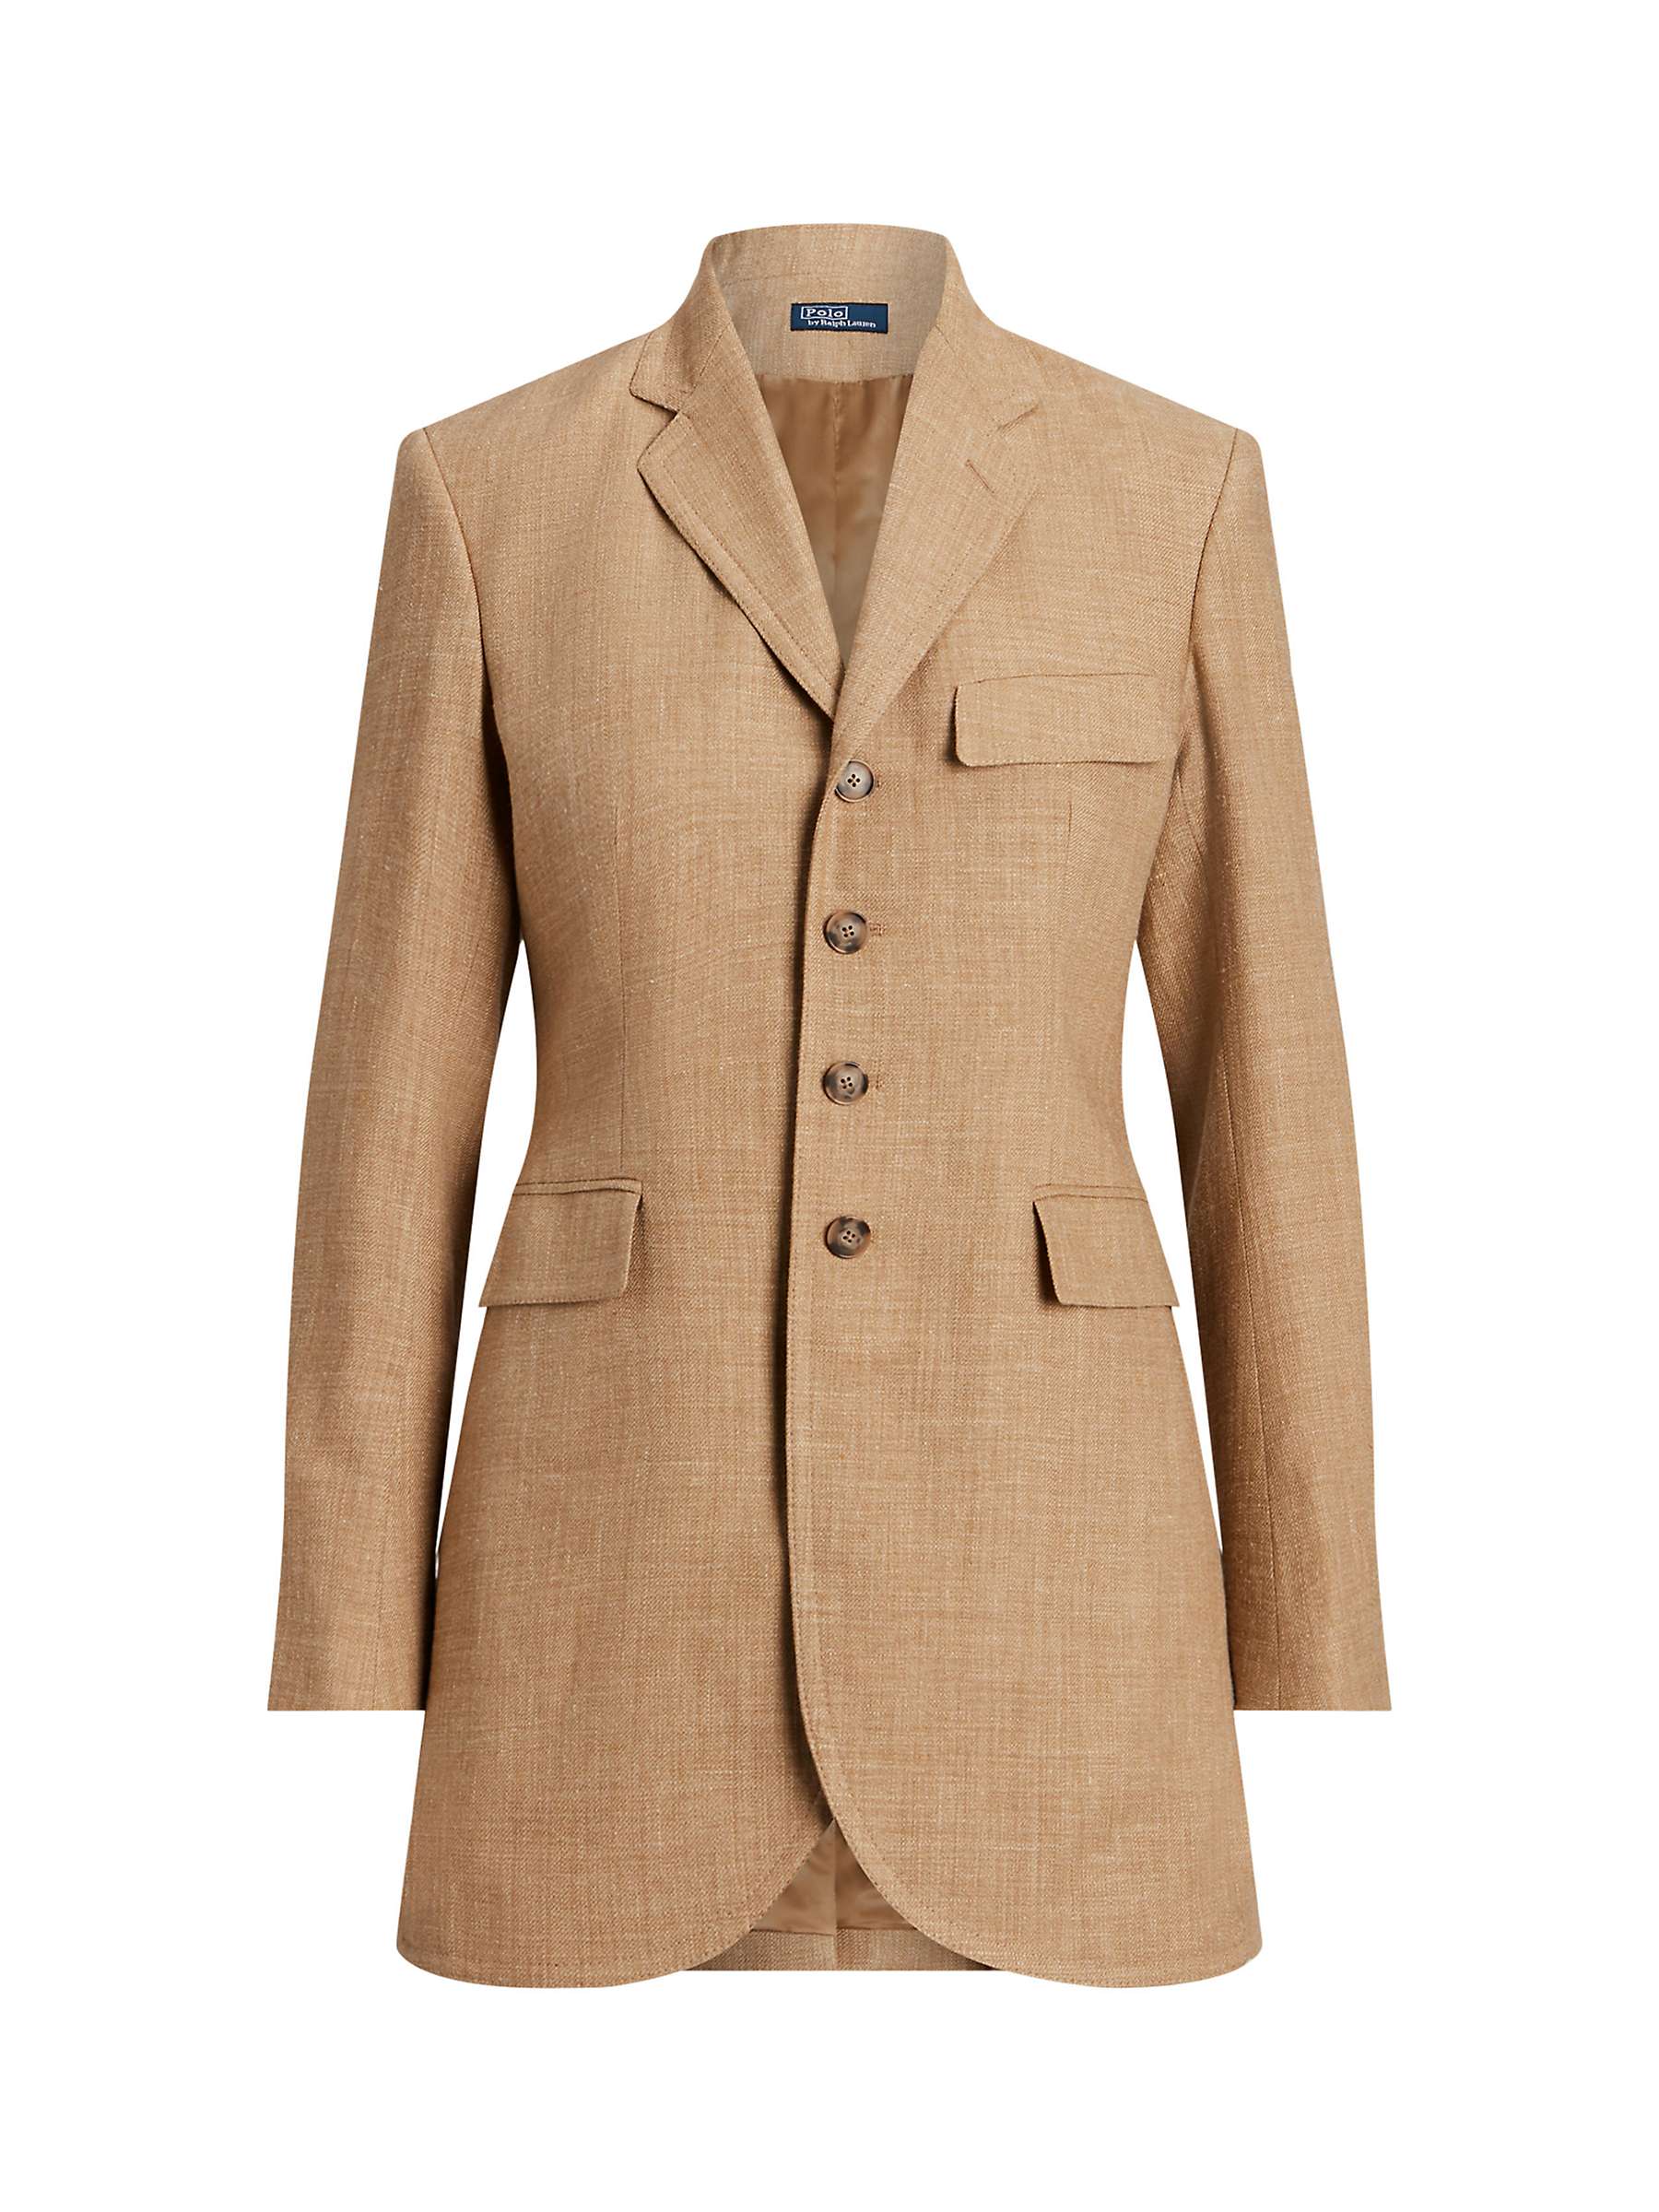 Buy Polo Ralph Lauren Silk Linen Tweed Blazer, Tan Online at johnlewis.com